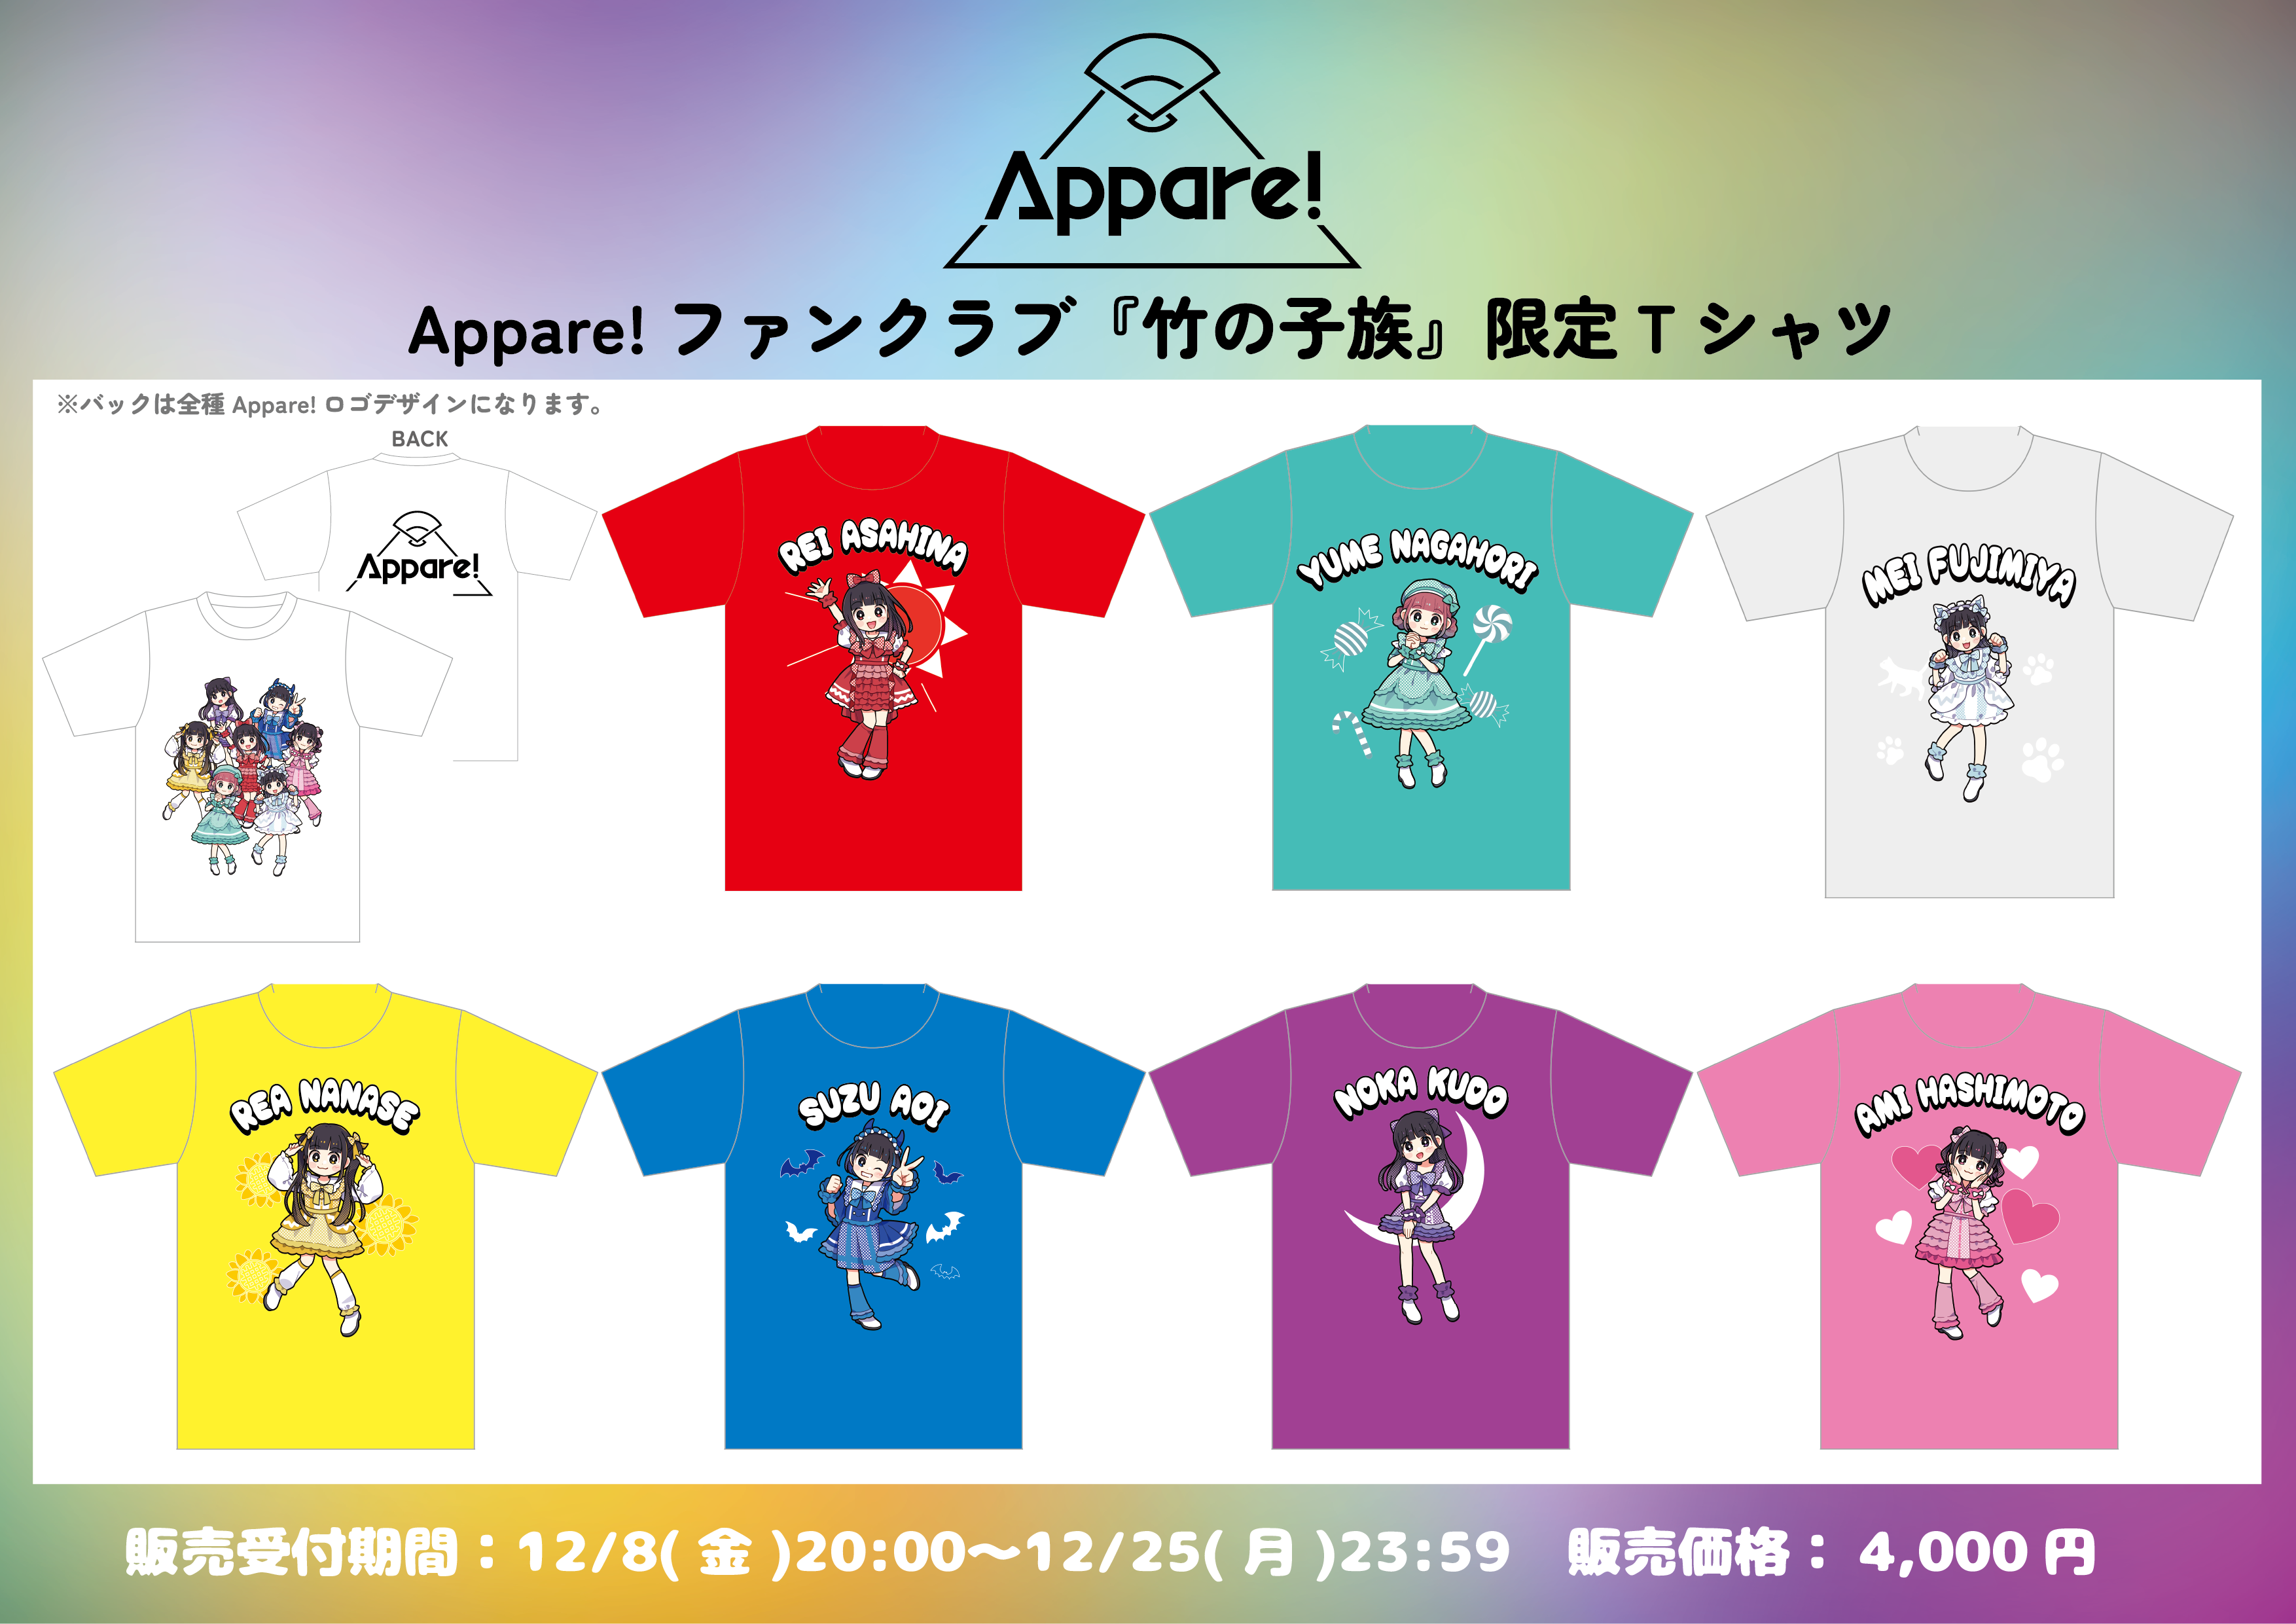 FC限定】Appare! ファンクラブ『竹の子族』限定Tシャツ | Appare!